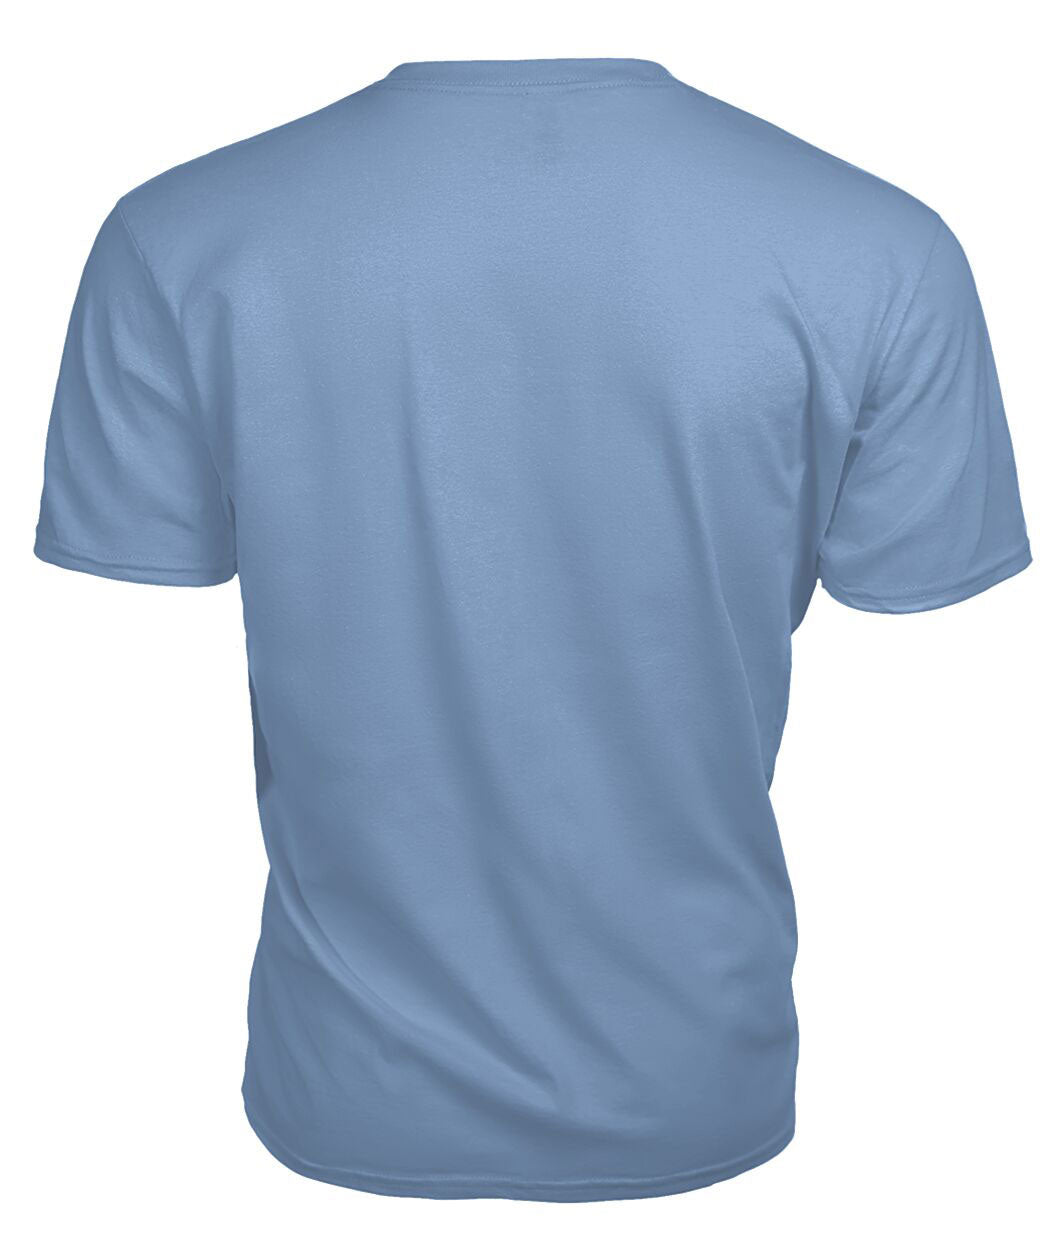 Lammie Tartan Crest 2D T-shirt - Blood Runs Through My Veins Style